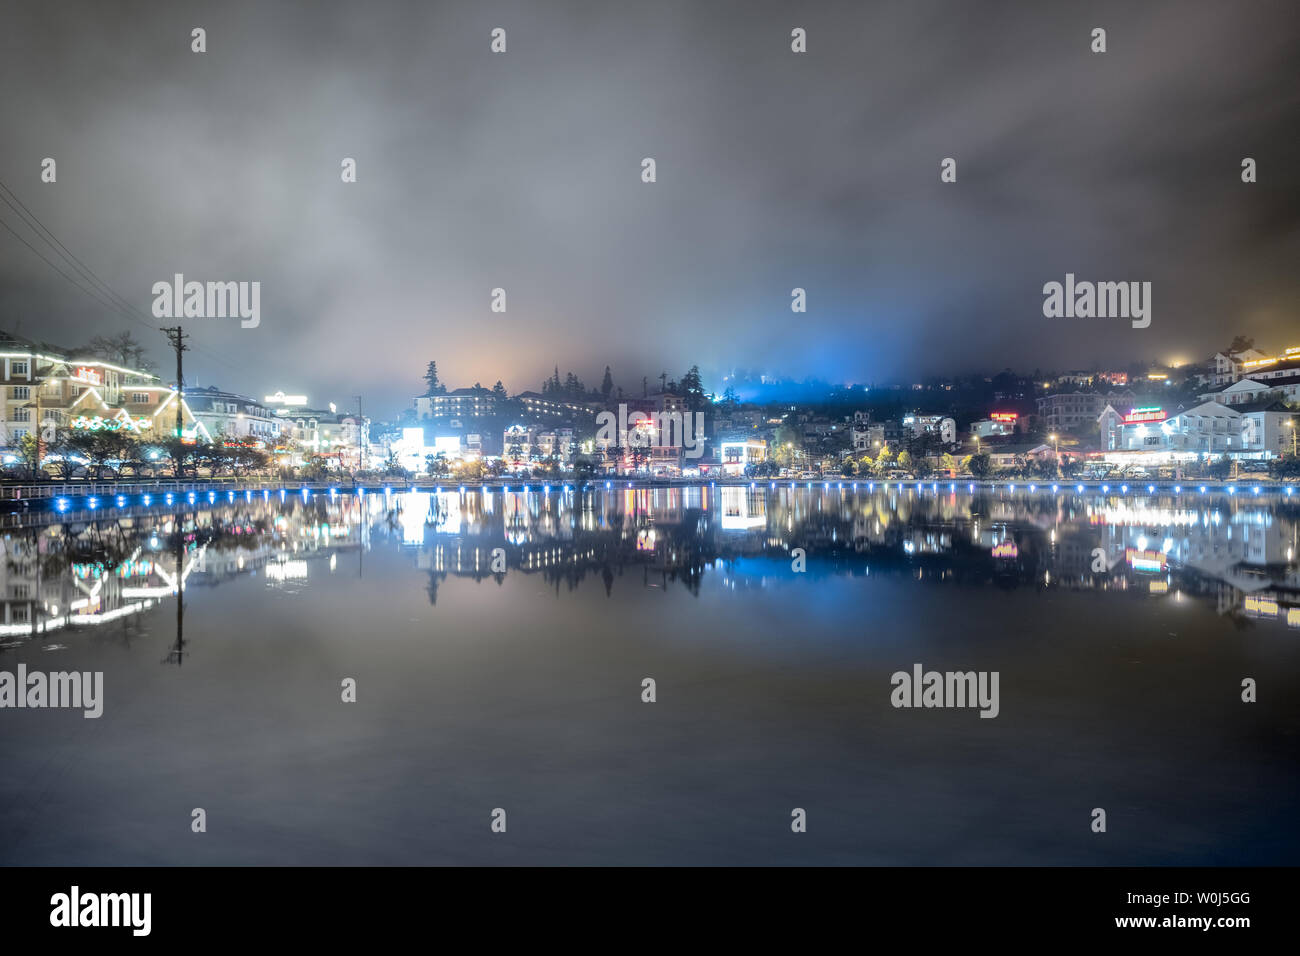 Sapa, Vietnam: 07.September 2017: Blickpunkt Stadt Beleuchtung Dekoration in der Lagune Nebel in der Nacht Stockfoto